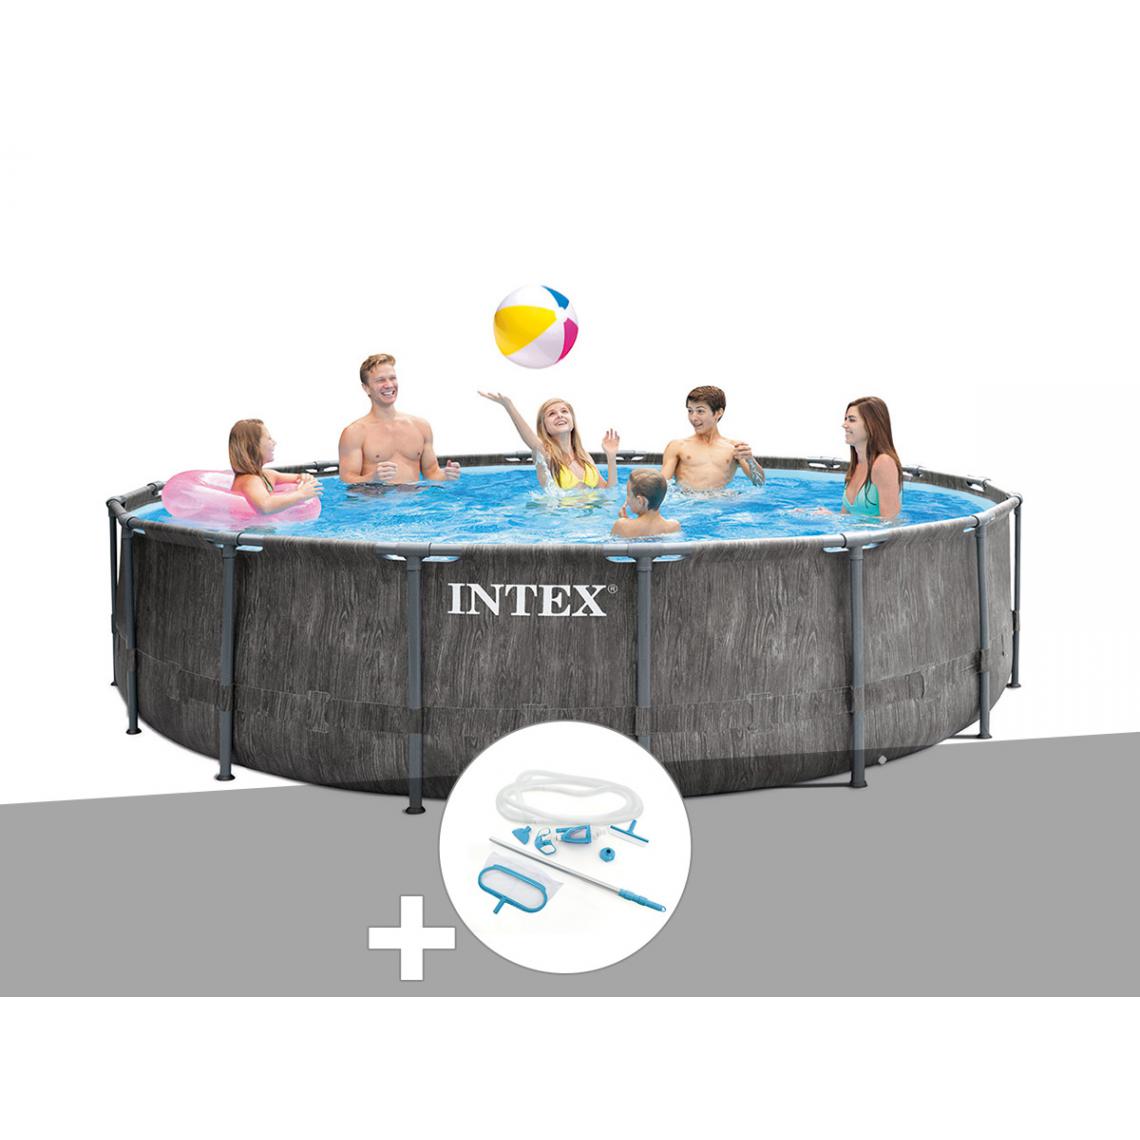 Intex - Kit piscine tubulaire Intex Baltik ronde 5,49 x 1,22 m + Kit d'entretien - Piscine Tubulaire